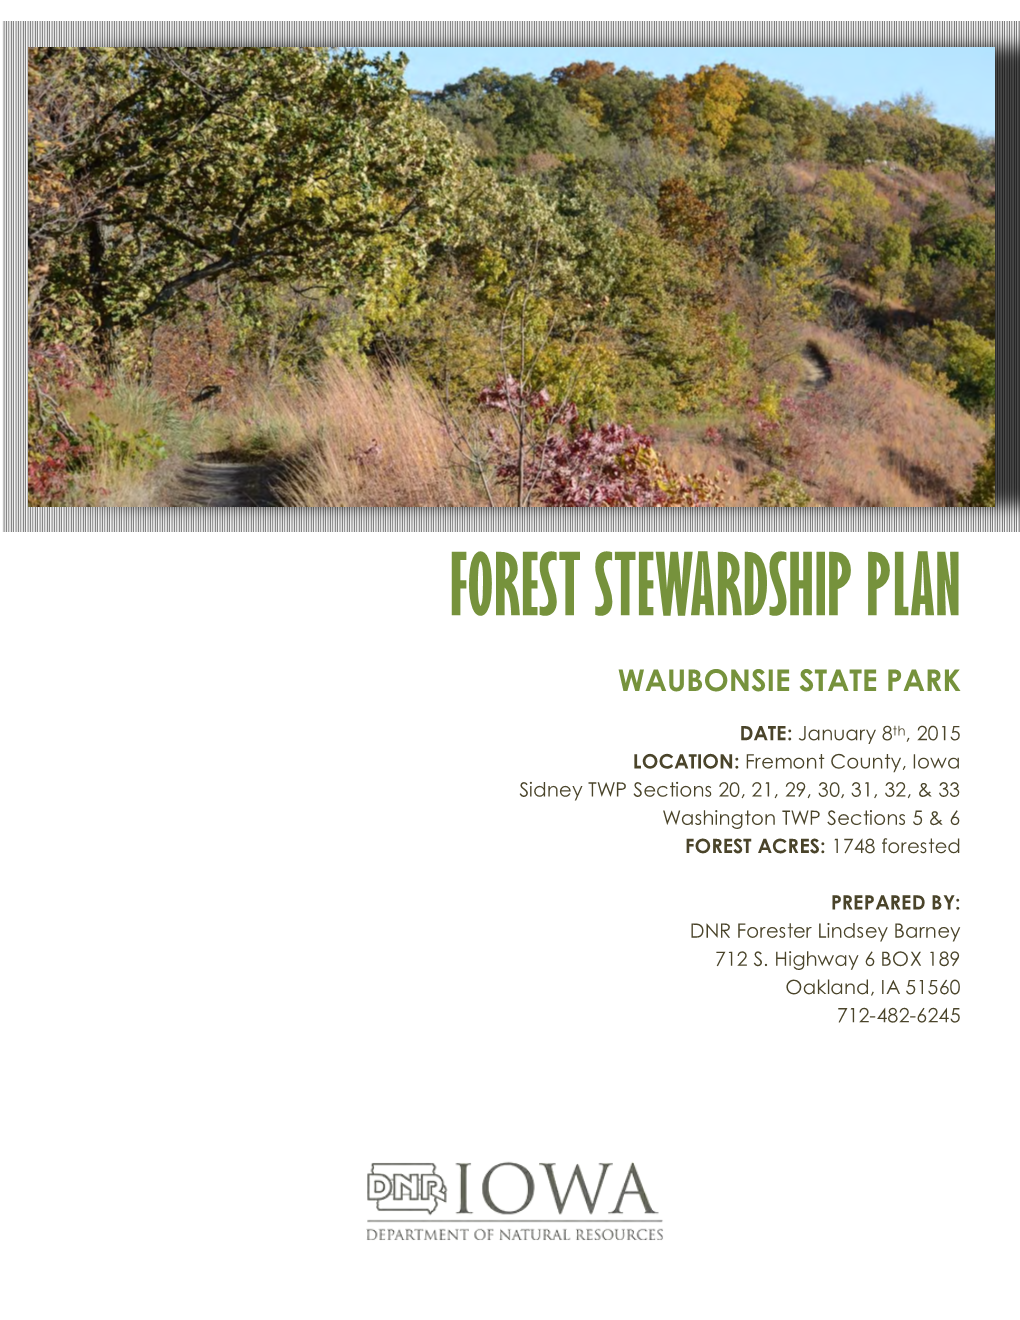 Waubonsie State Park Forest Stewardship Plan